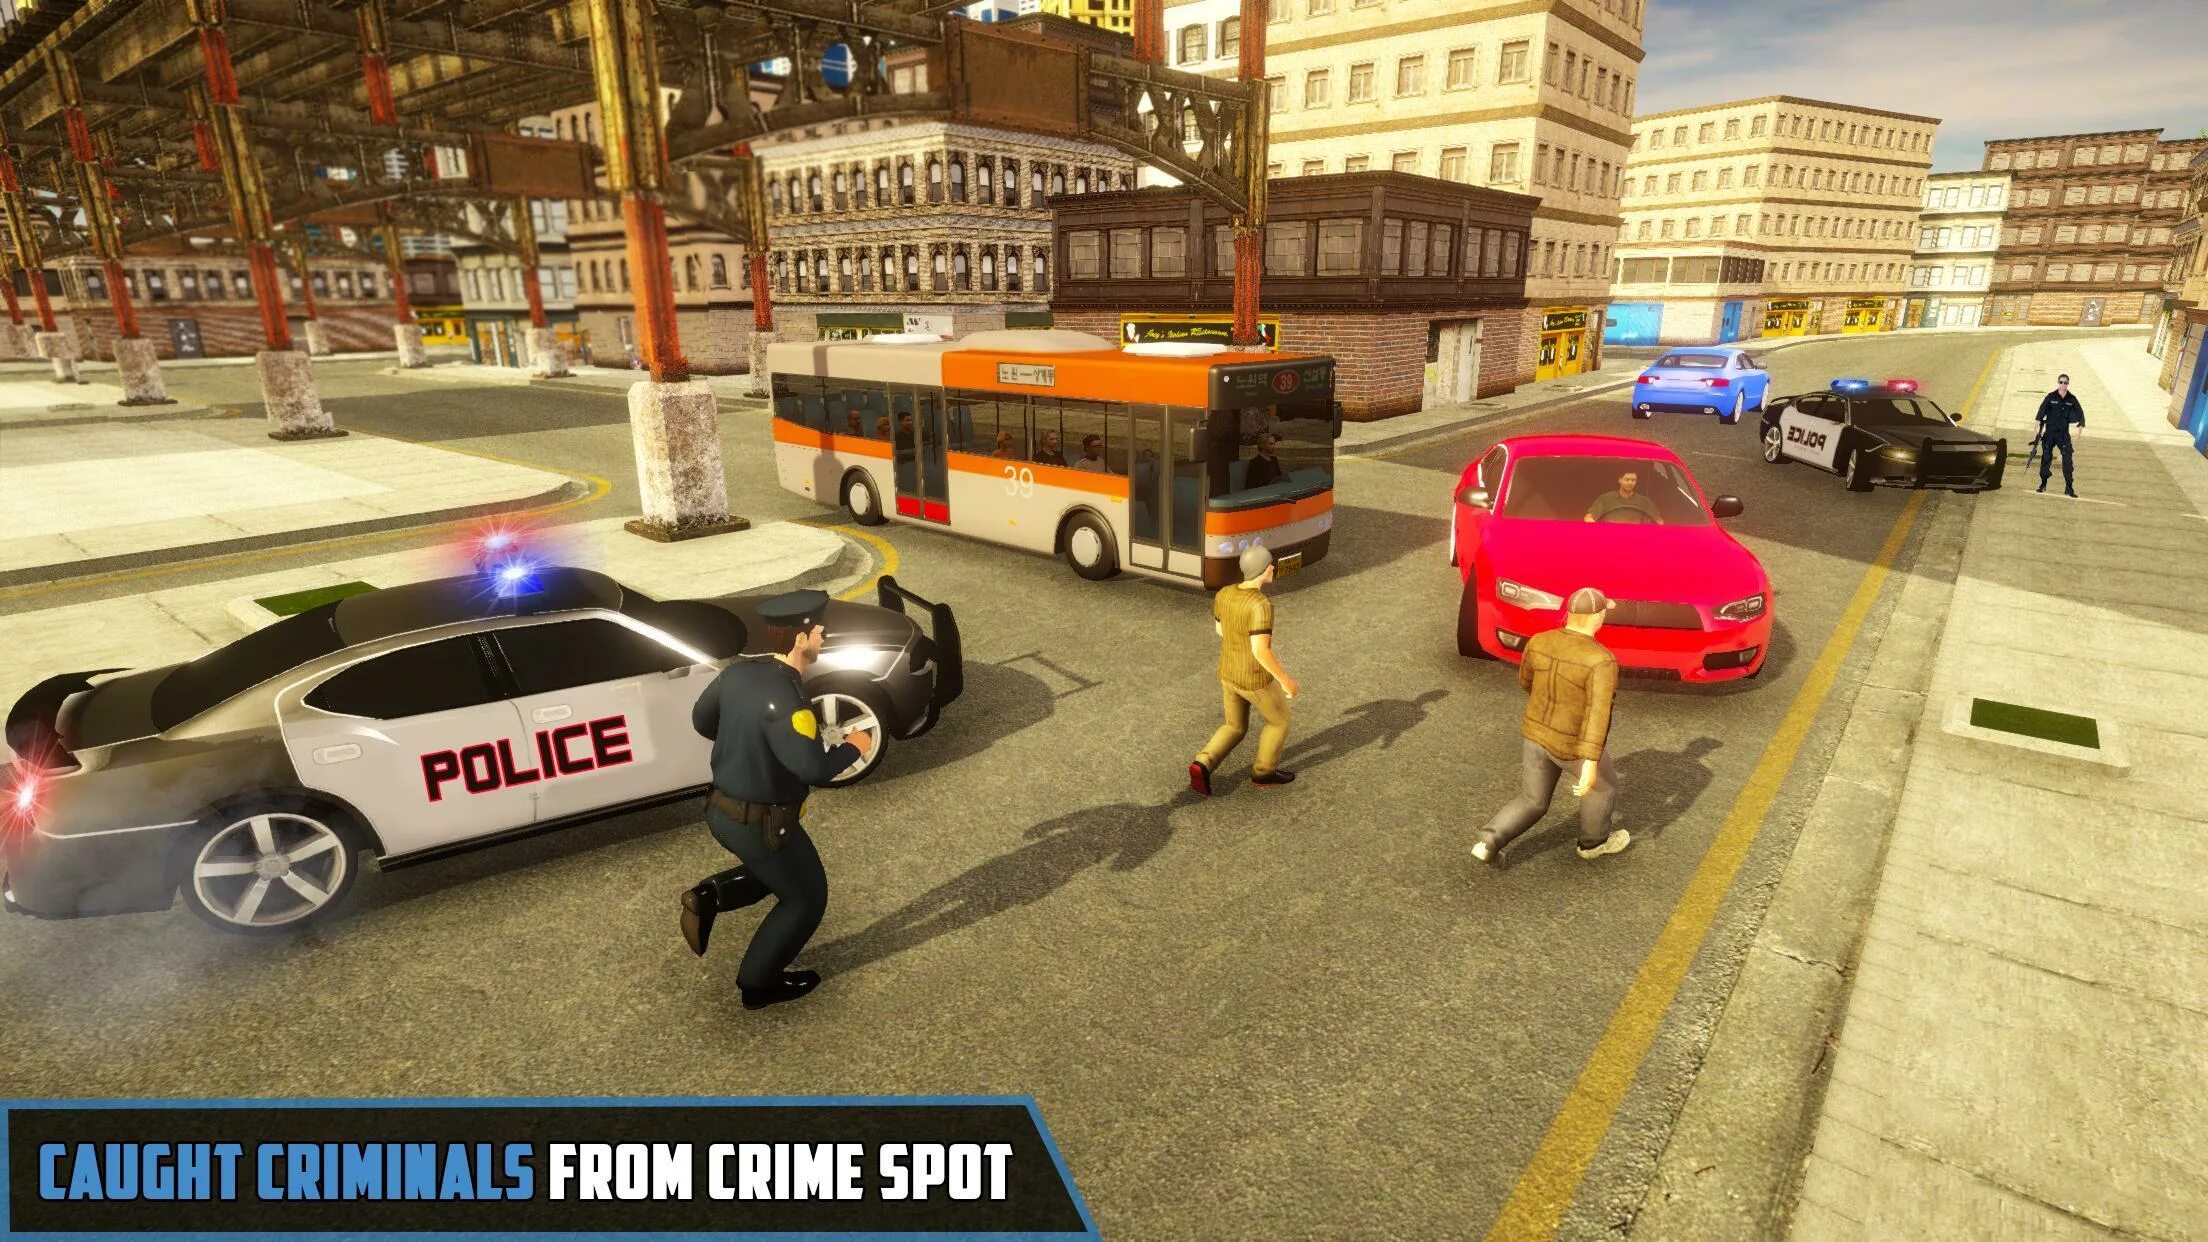 The Police игра. Игры про полицию. Новая игра полиция. Американская полиция в играх.